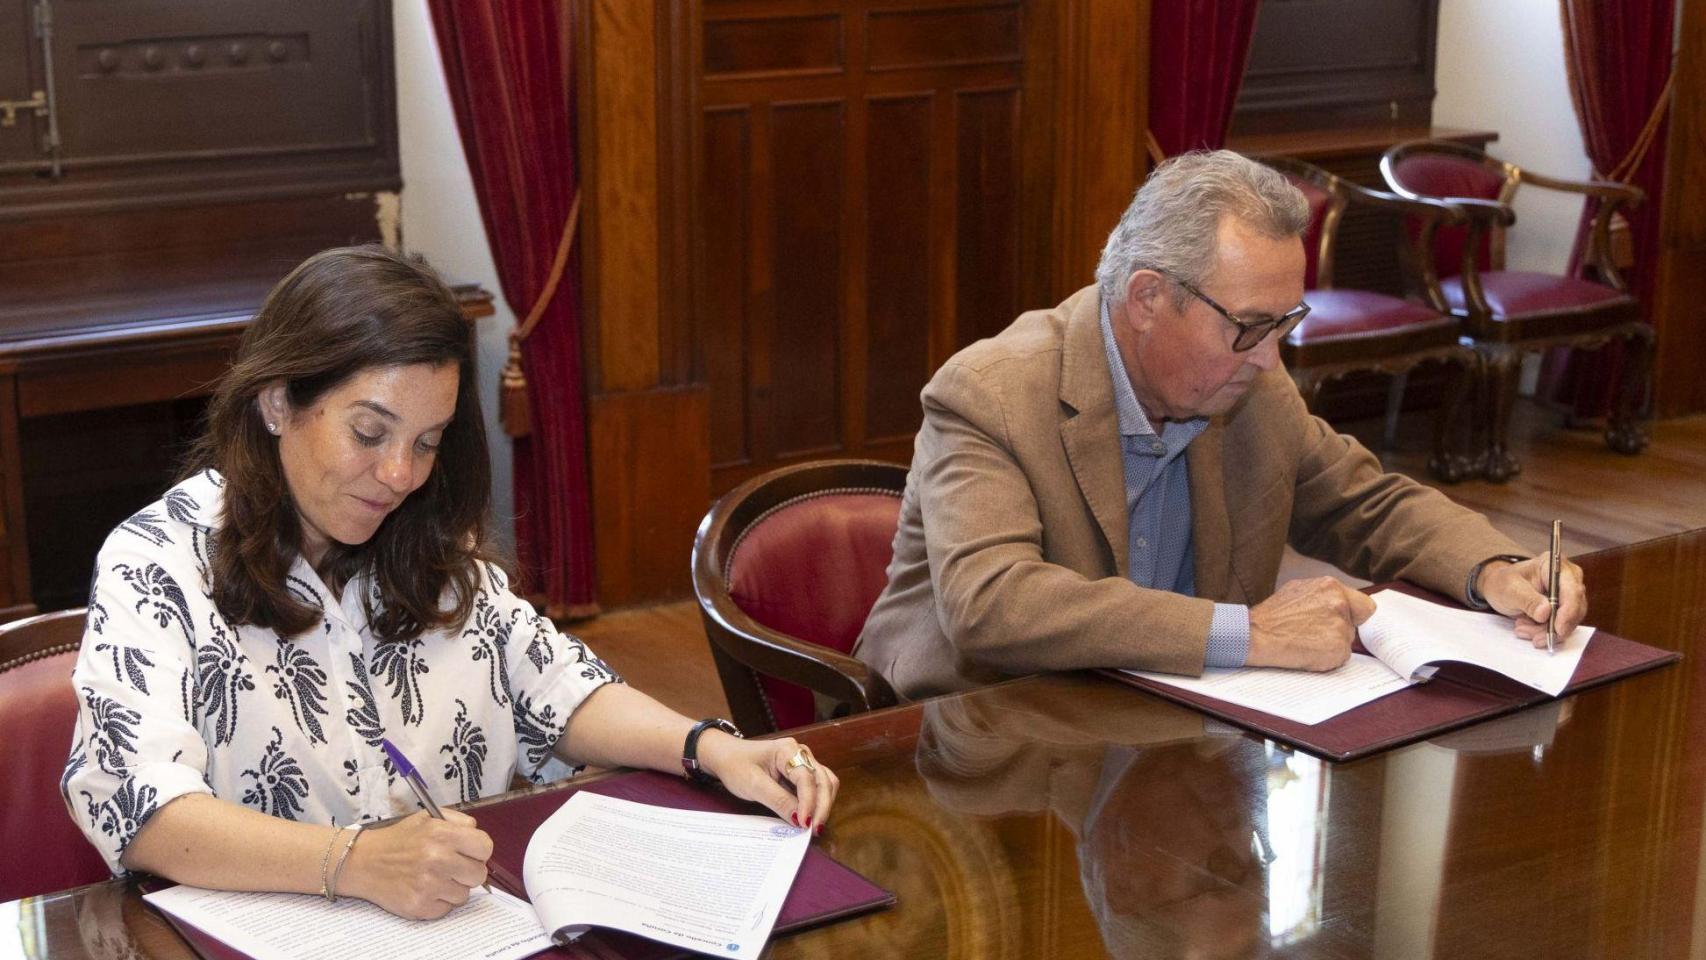 Firma del convenio de colaboración entre Ayuntamiento y ADACECO